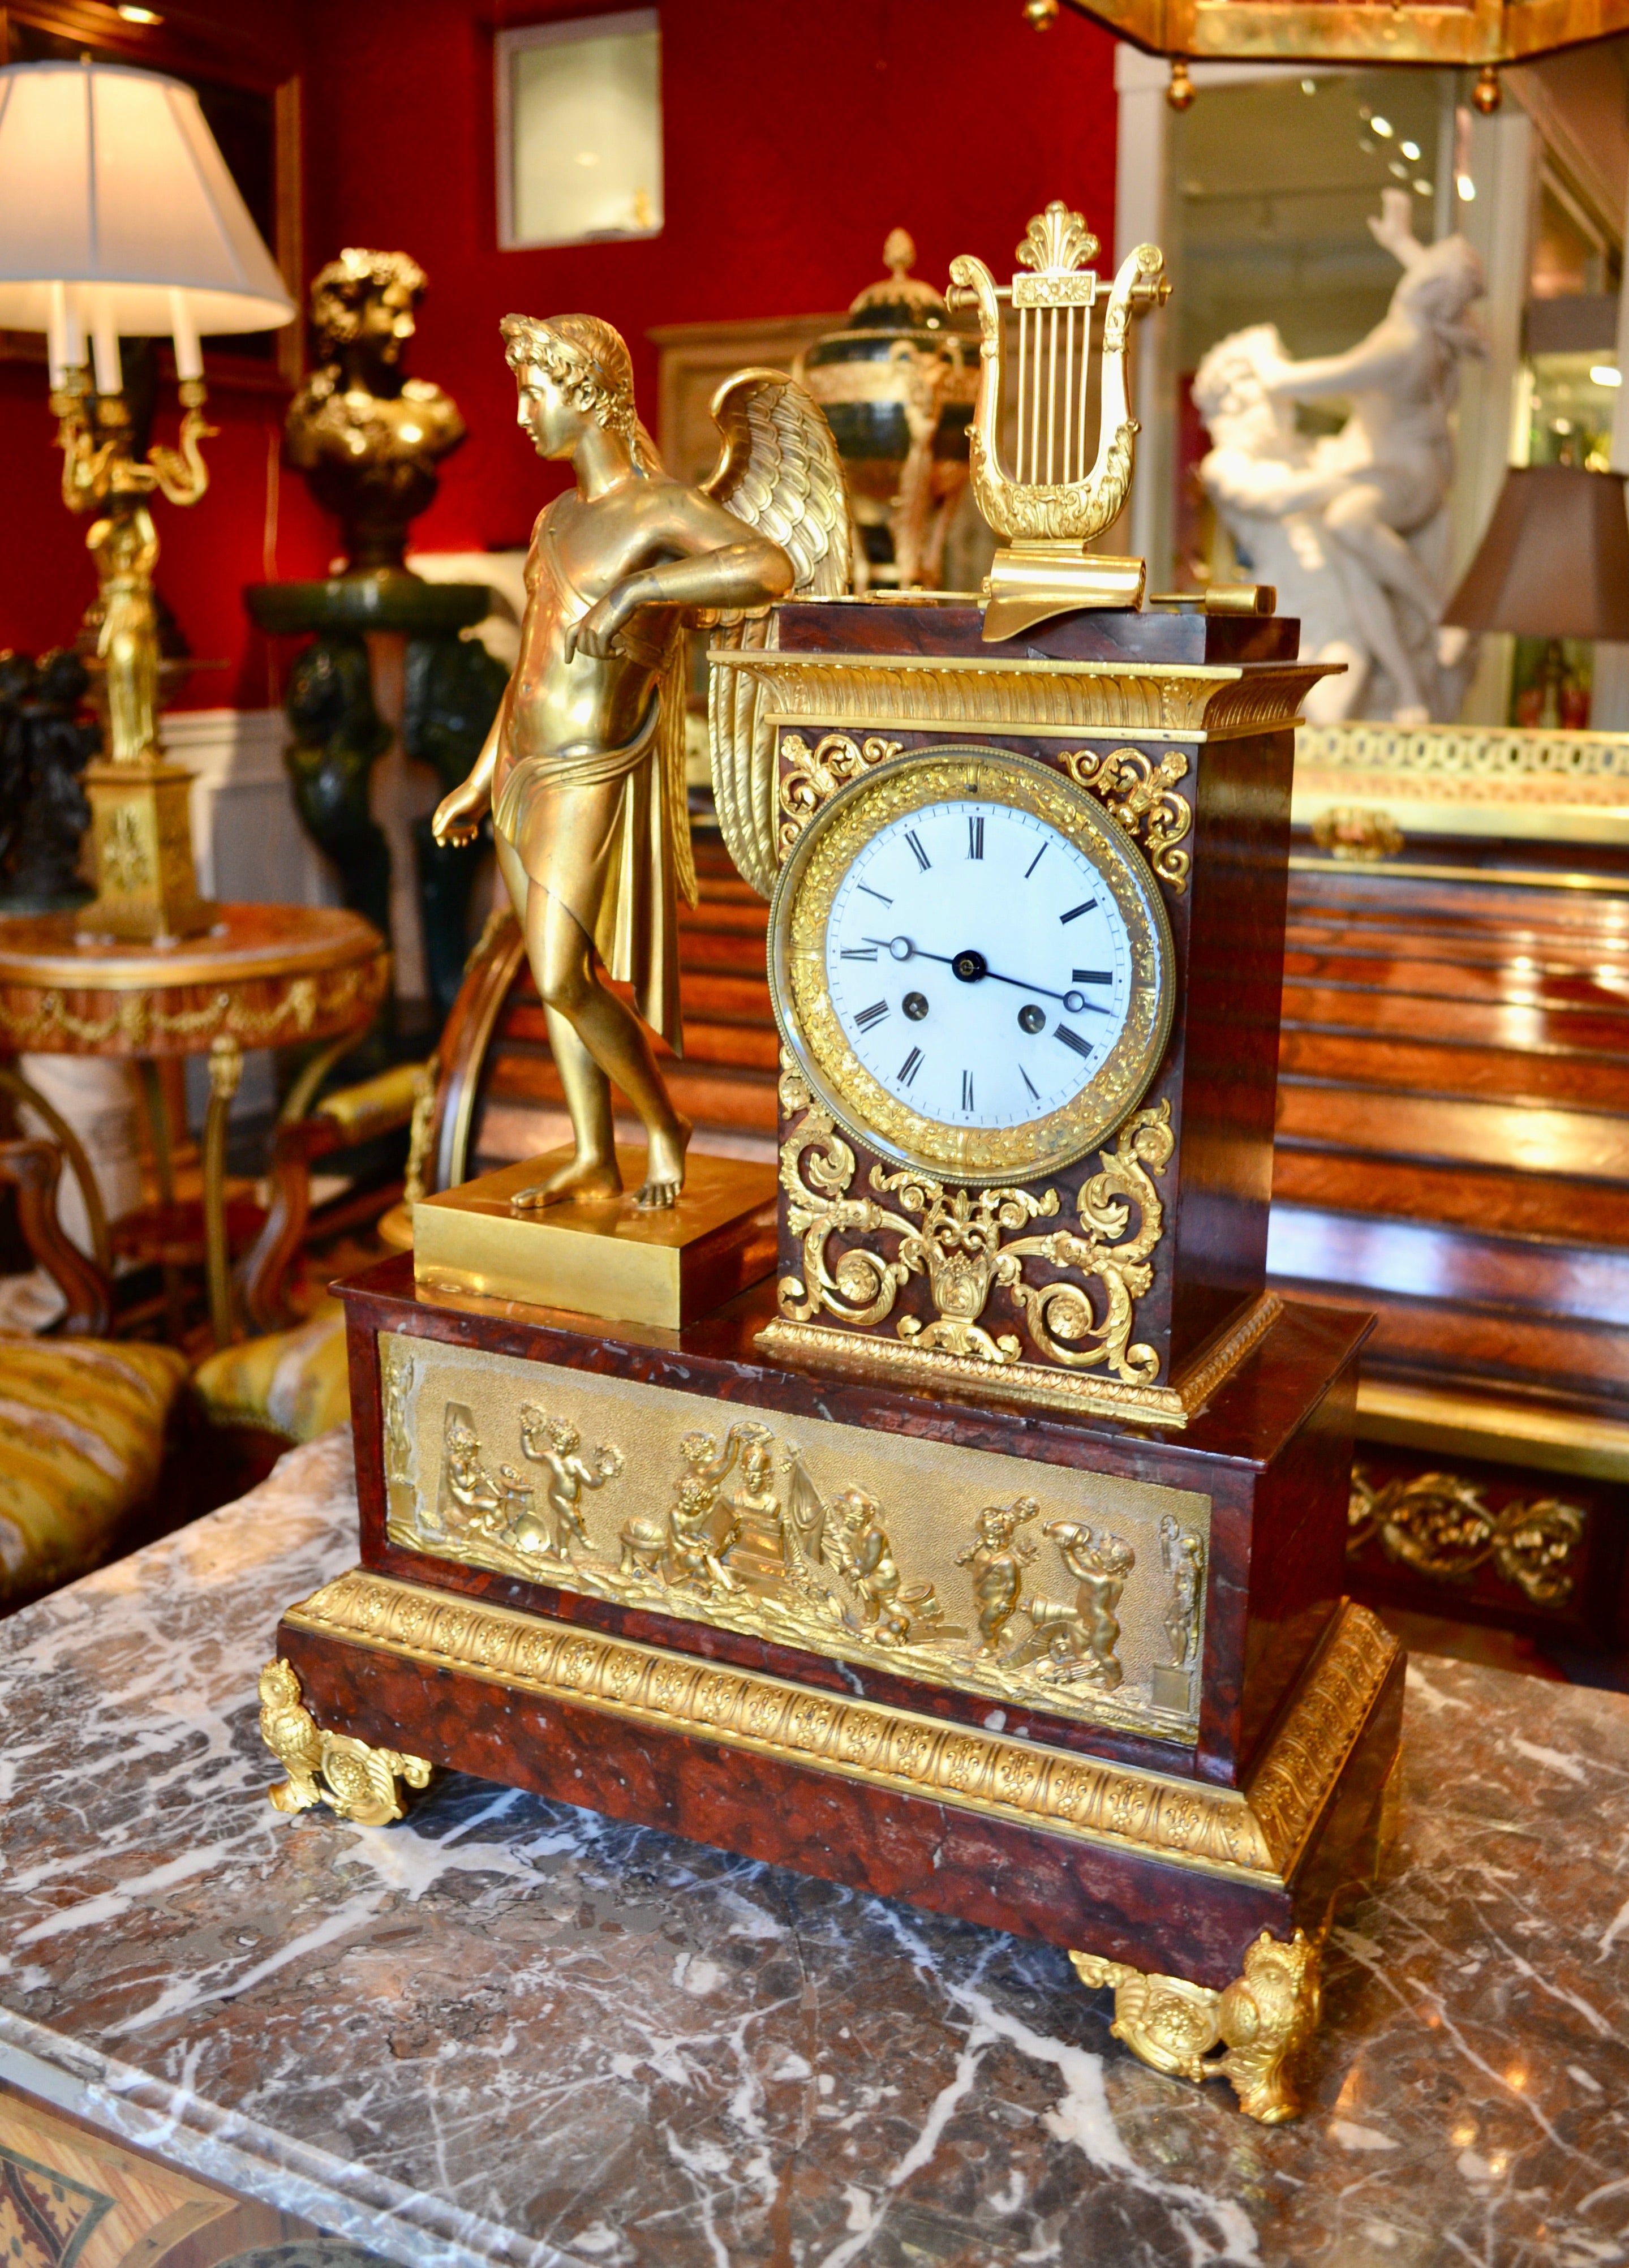 Eine Uhr aus vergoldeter Bronze und Griotte-Marmor im französischen Empire-Stil mit der Darstellung  Apollo Griechischer Gott der Musik, Kunst, Literatur und Wissenschaft. Die Uhr zeigt eine geflügelte Figur des Apollo aus vergoldeter Bronze, die